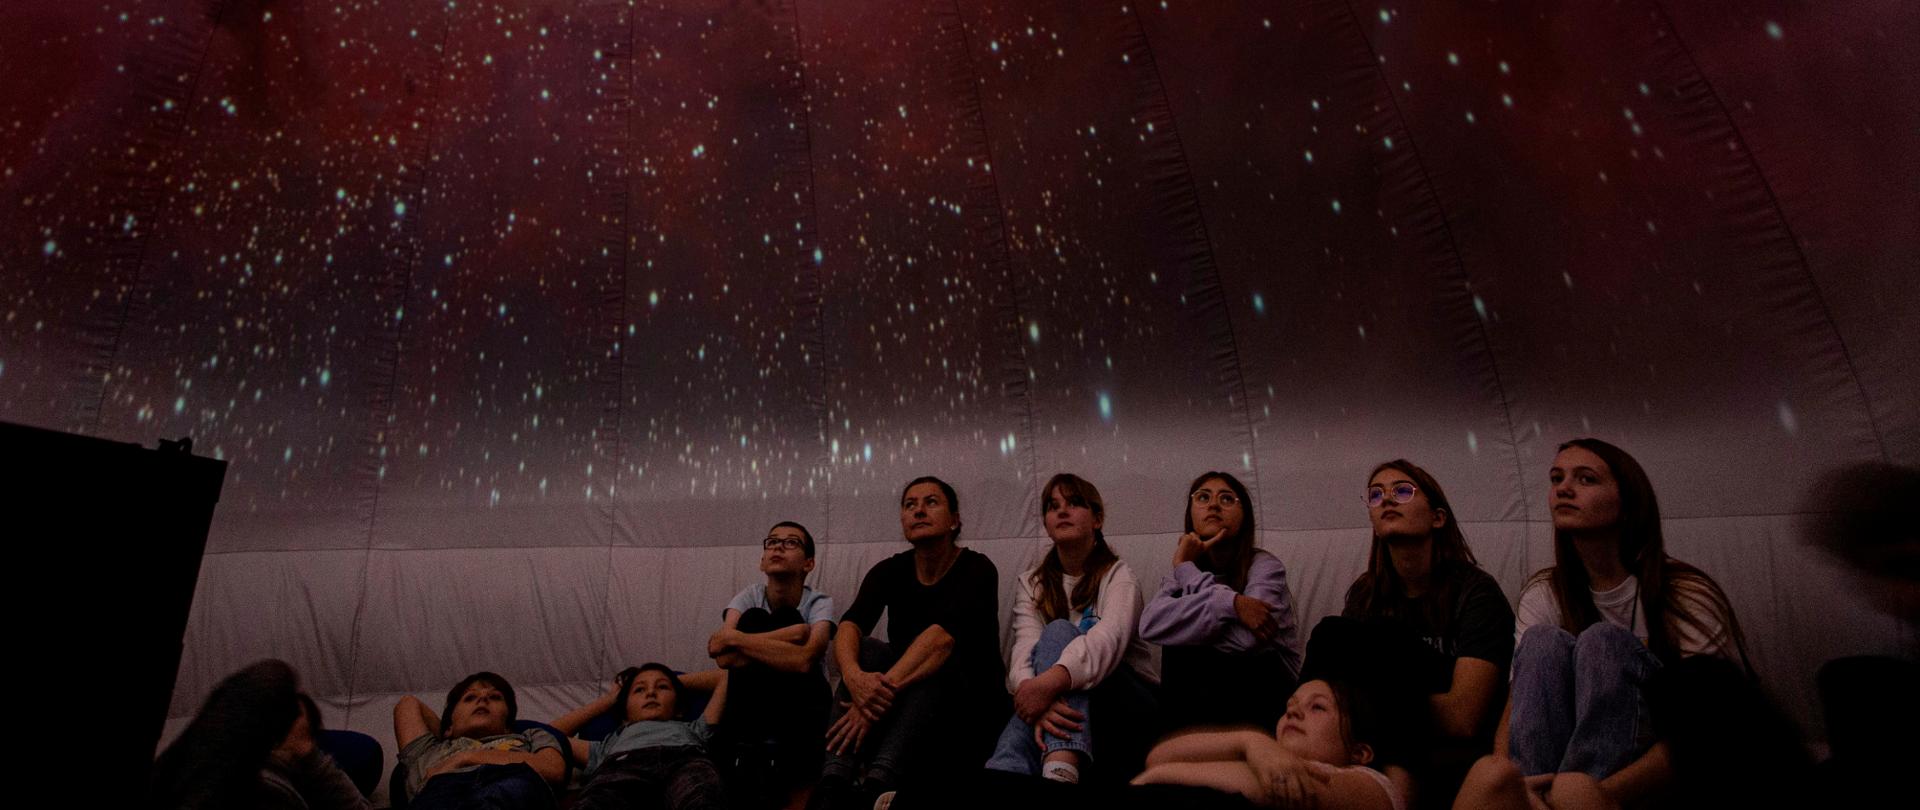 Grupa młodzieży wraz z opiekunem siedzą pod kopułą namiotu na której wyświetlany jest gwiazdozbiór.